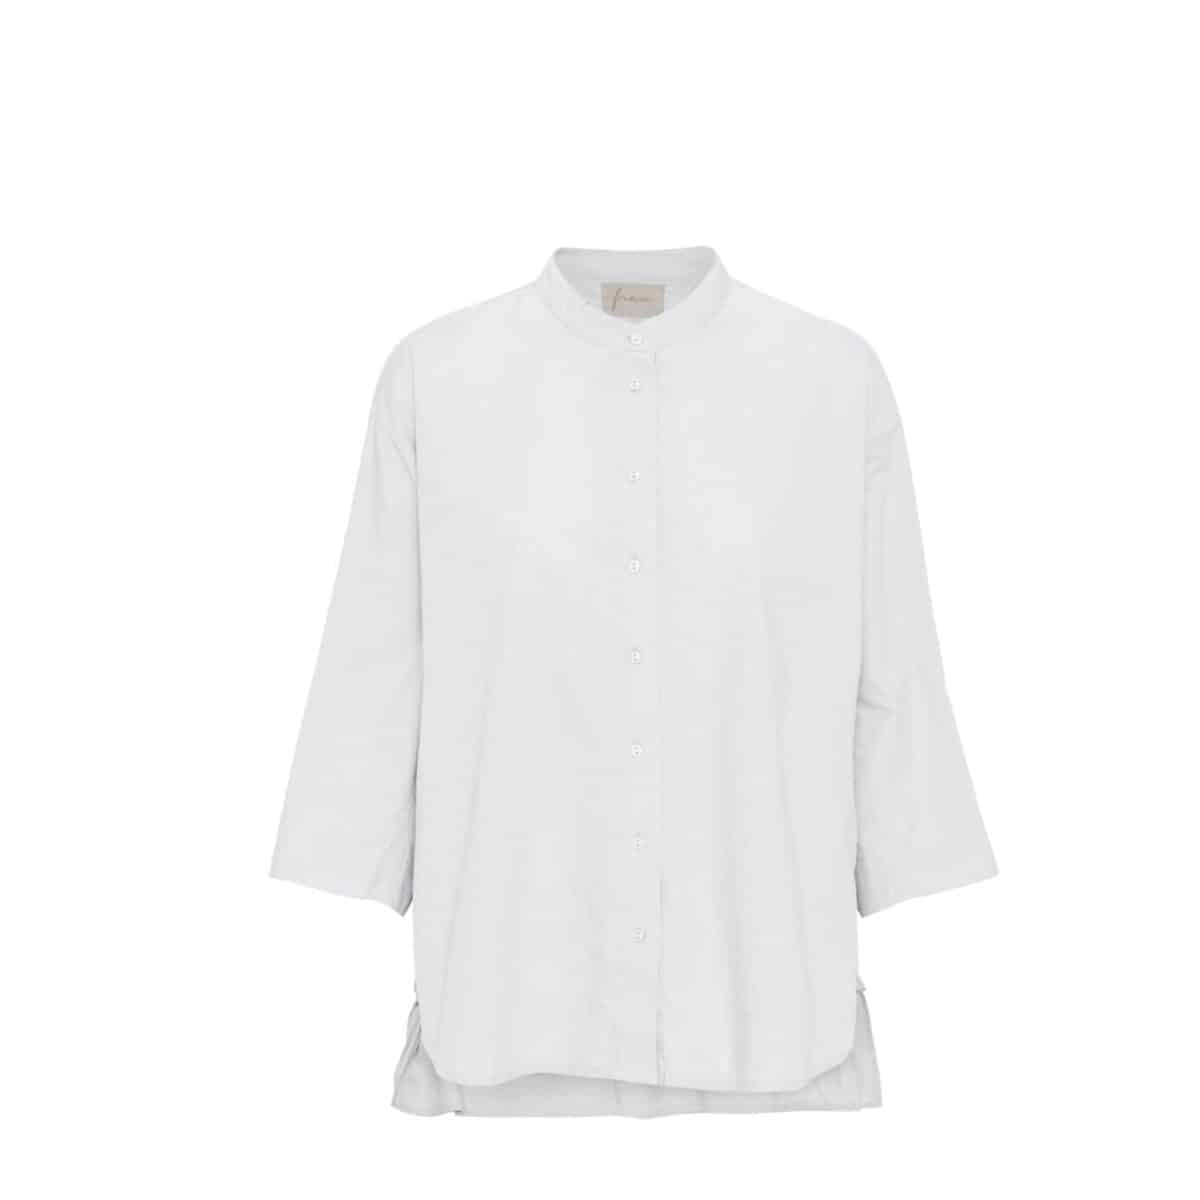 Frau skjorte Seoul 2/4 hvid